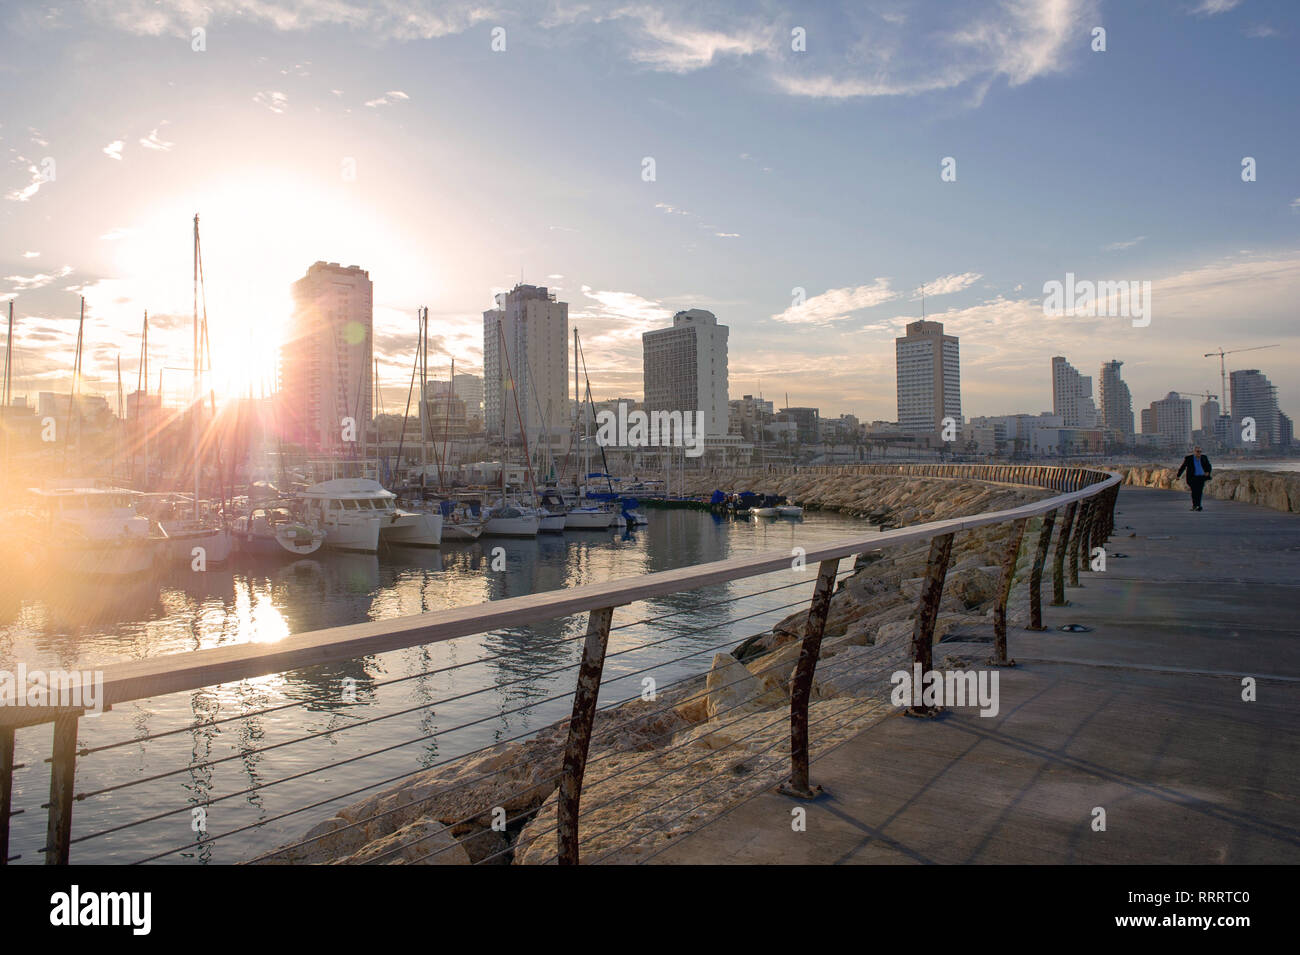 Tel Aviv Marina, Israel Stock Photo